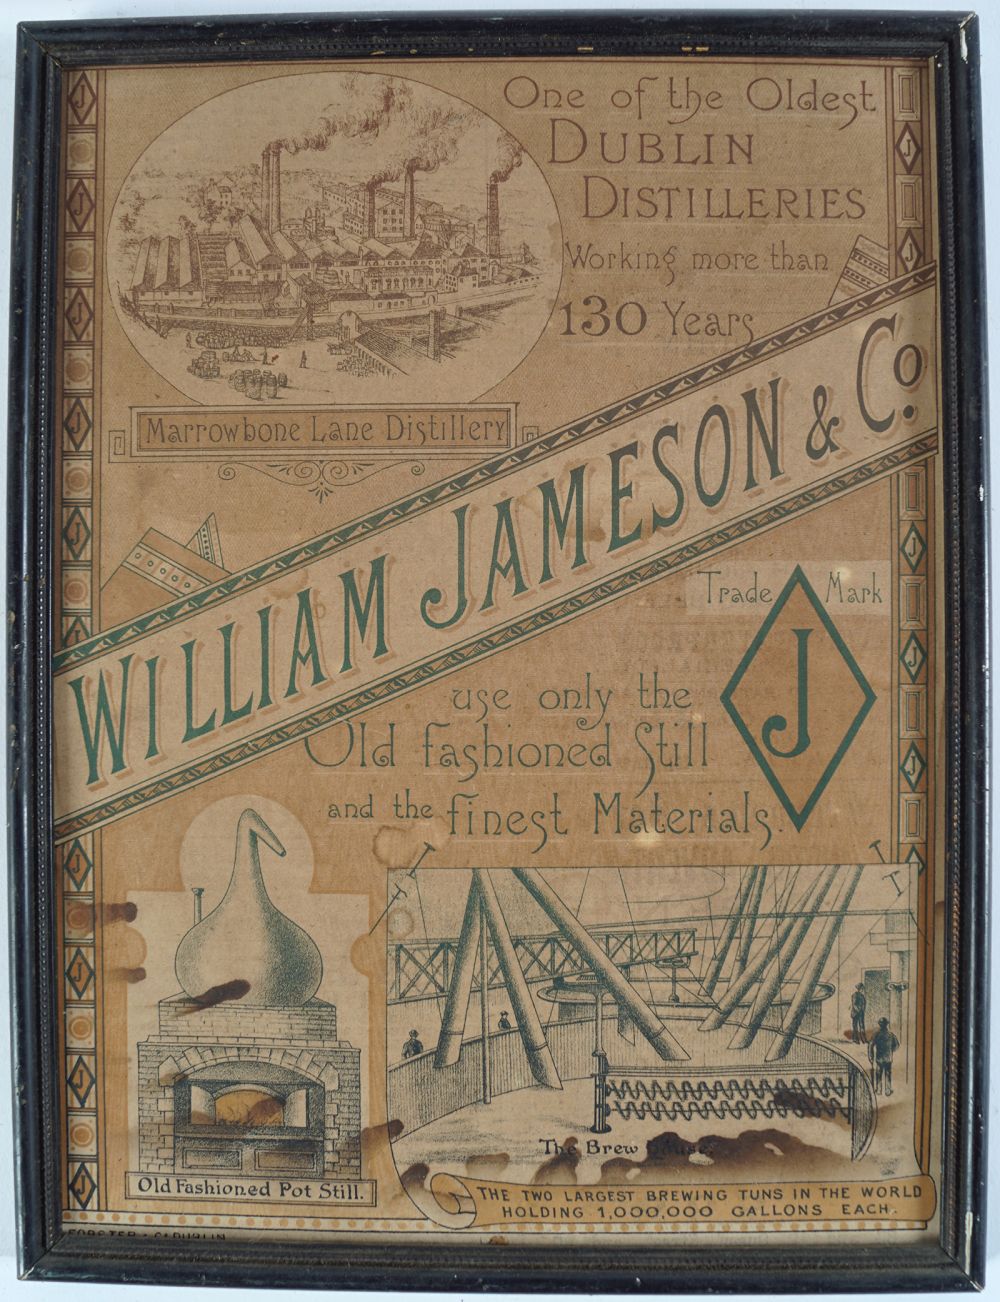 WILLIAM JAMESON & CO. ORIGINAL SIGN